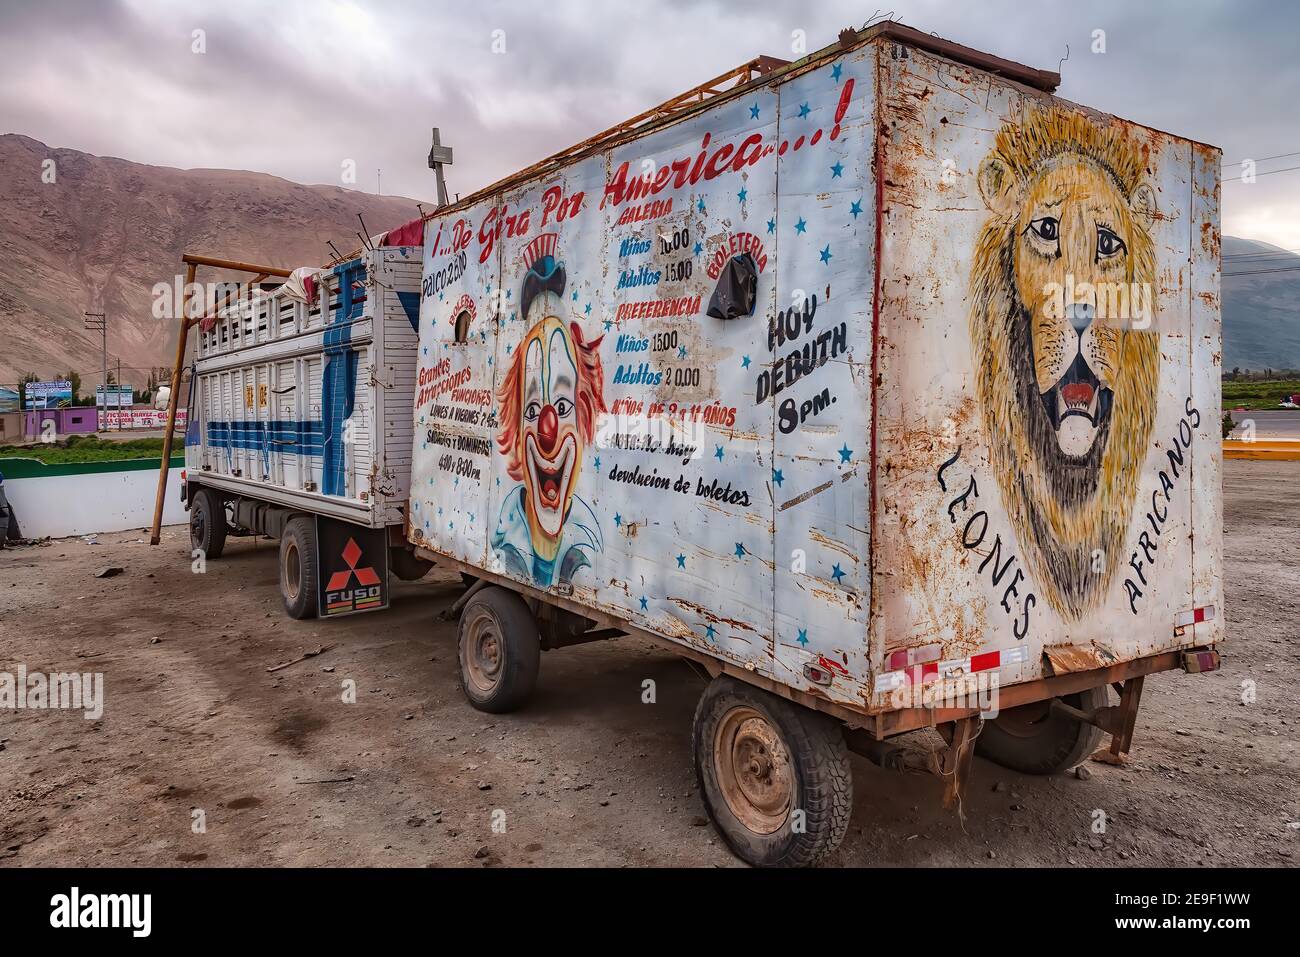 Ocona, Perù - 18 agosto 2010: Un camioncino vecchio stile circo dipinto a mano visto parcheggiato in una stazione di benzina sulla strada per Arequipa Foto Stock